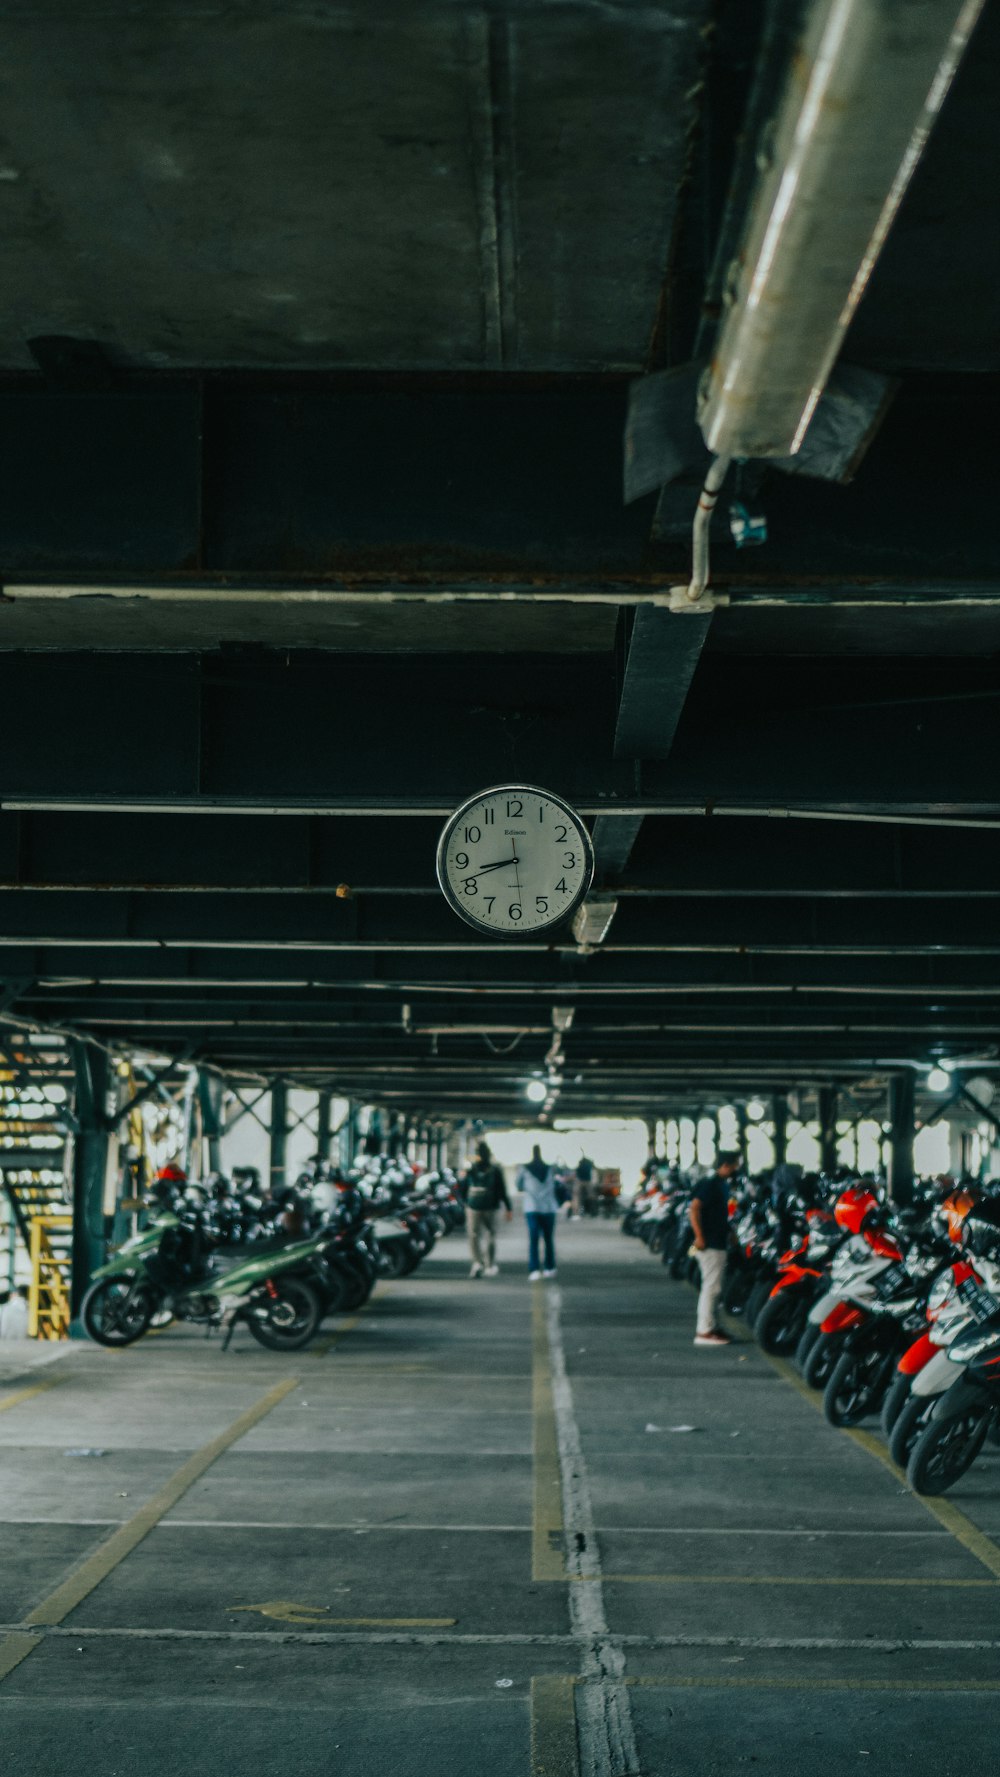 un groupe de motos garées dans un garage